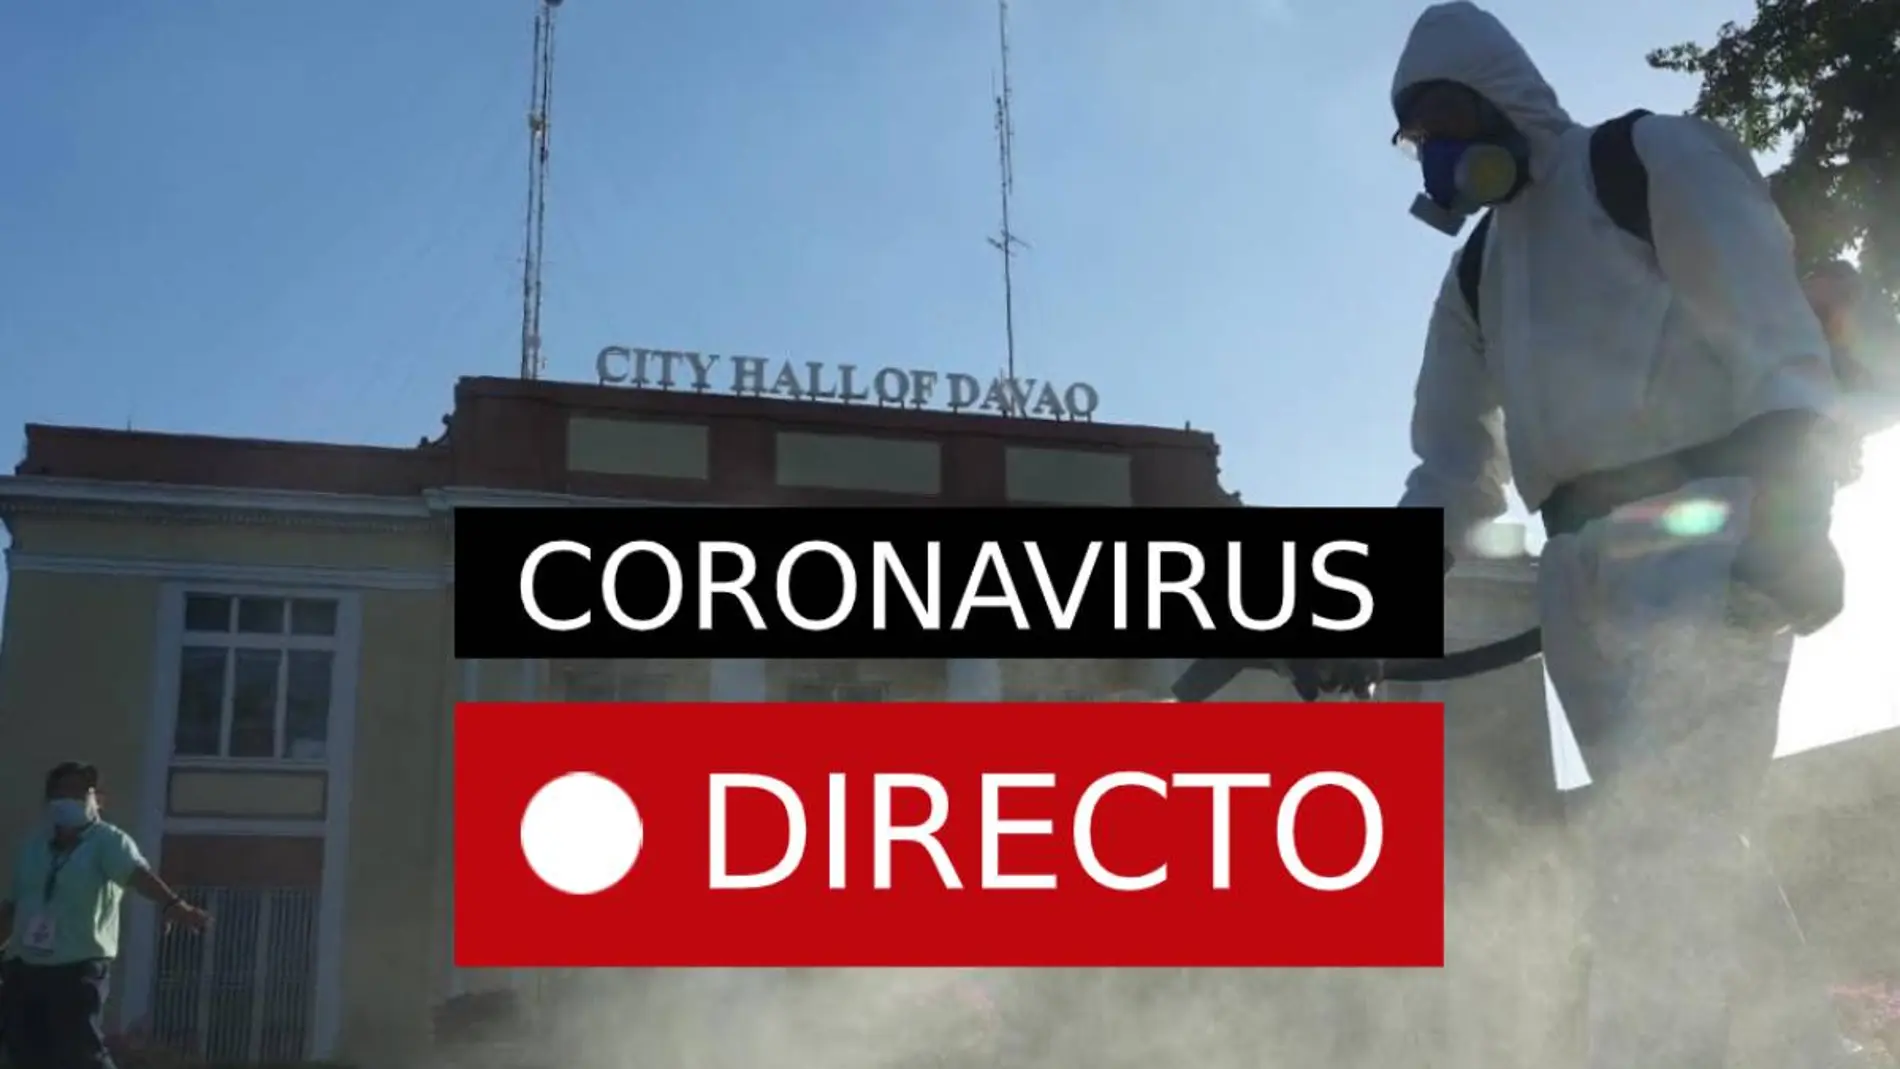 Coronavirus en directo | Última hora del covid-19 y los nuevos casos en España